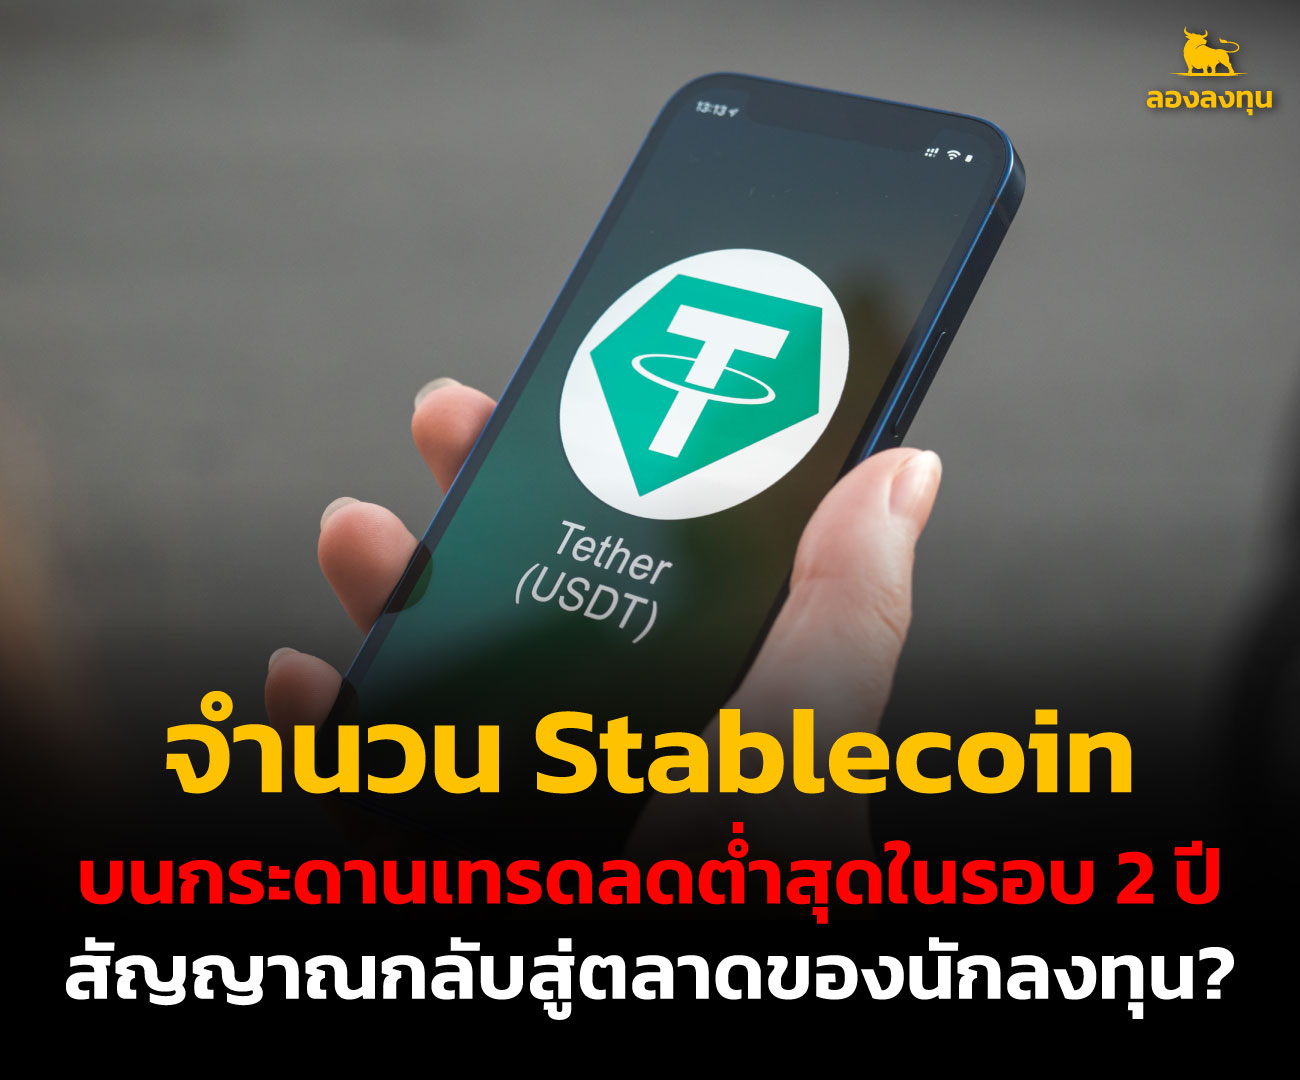 จำนวน Stablecoin บนกระดานเทรดลดต่ำสุดในรอบ 2 ปี สัญญาณกลับสู่ตลาดของนักลงทุน